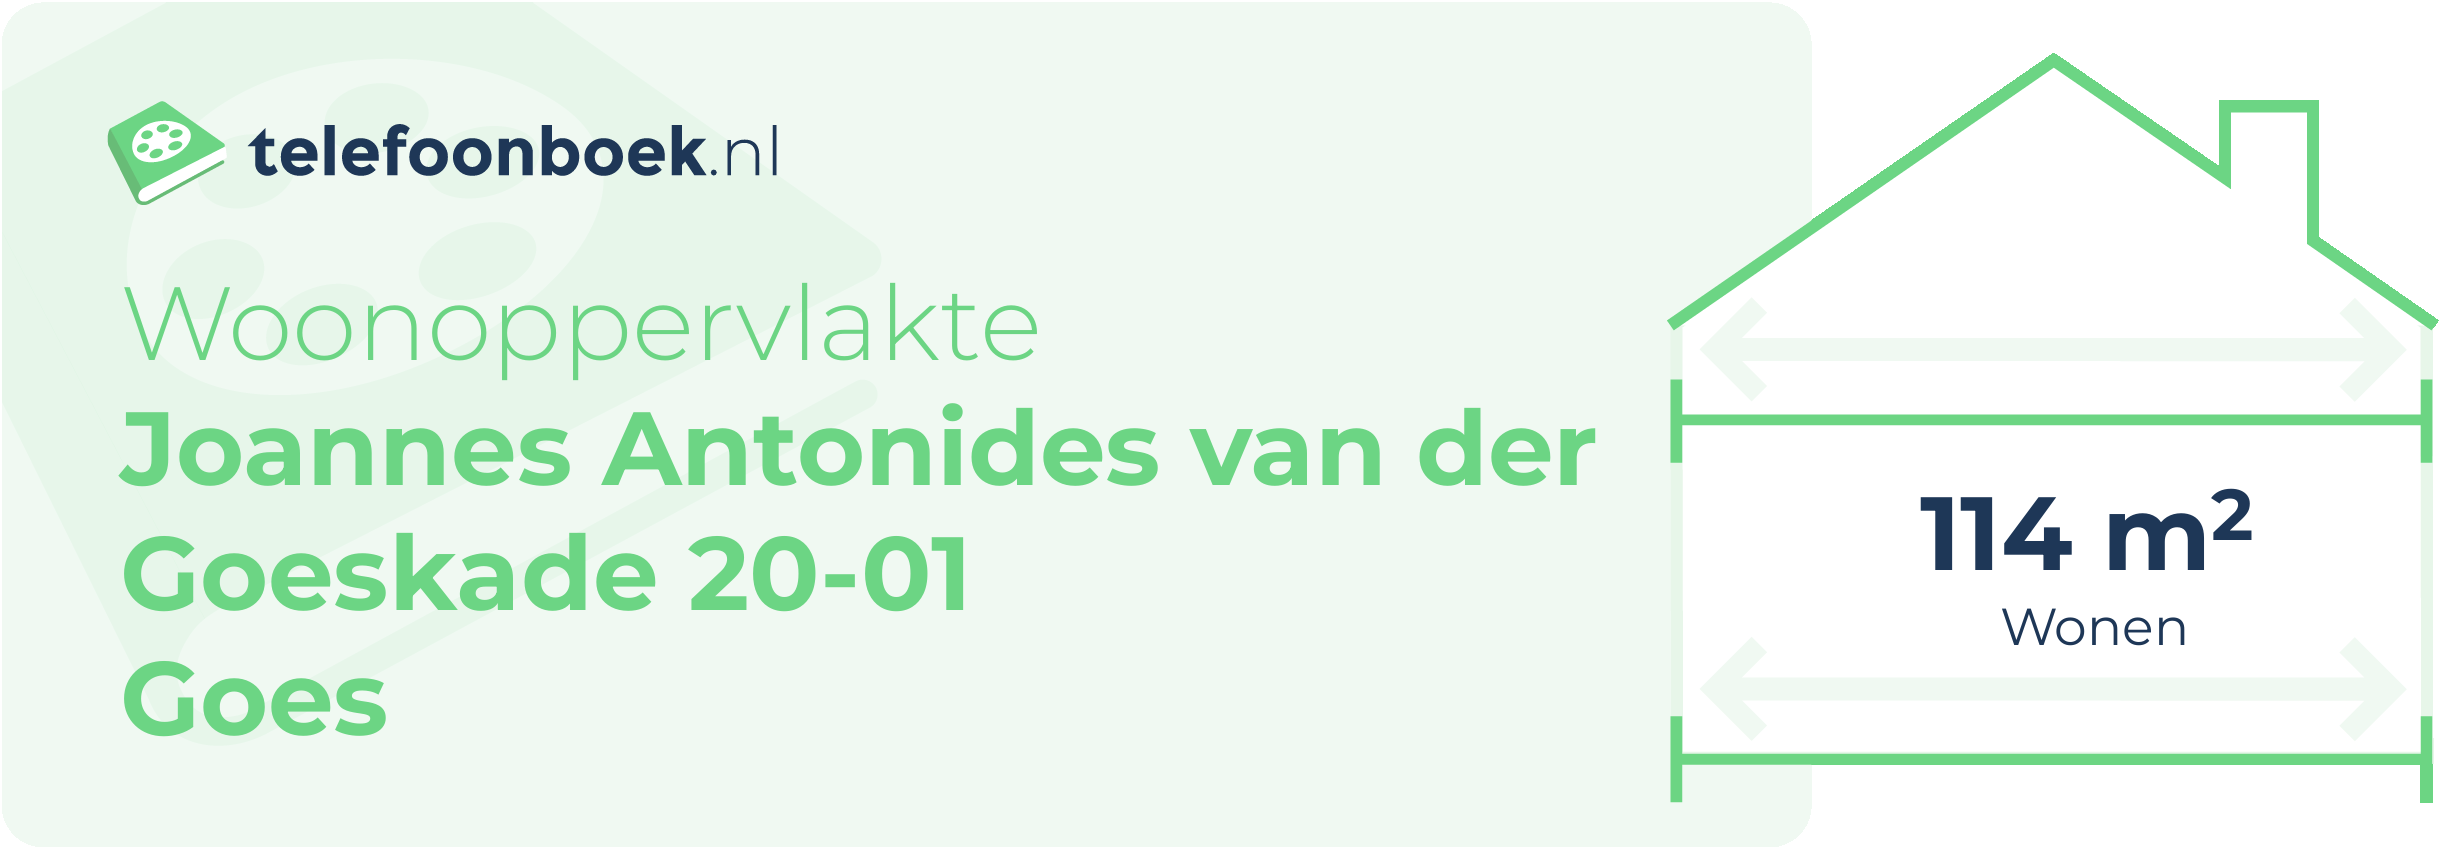 Woonoppervlakte Joannes Antonides Van Der Goeskade 20-01 Goes